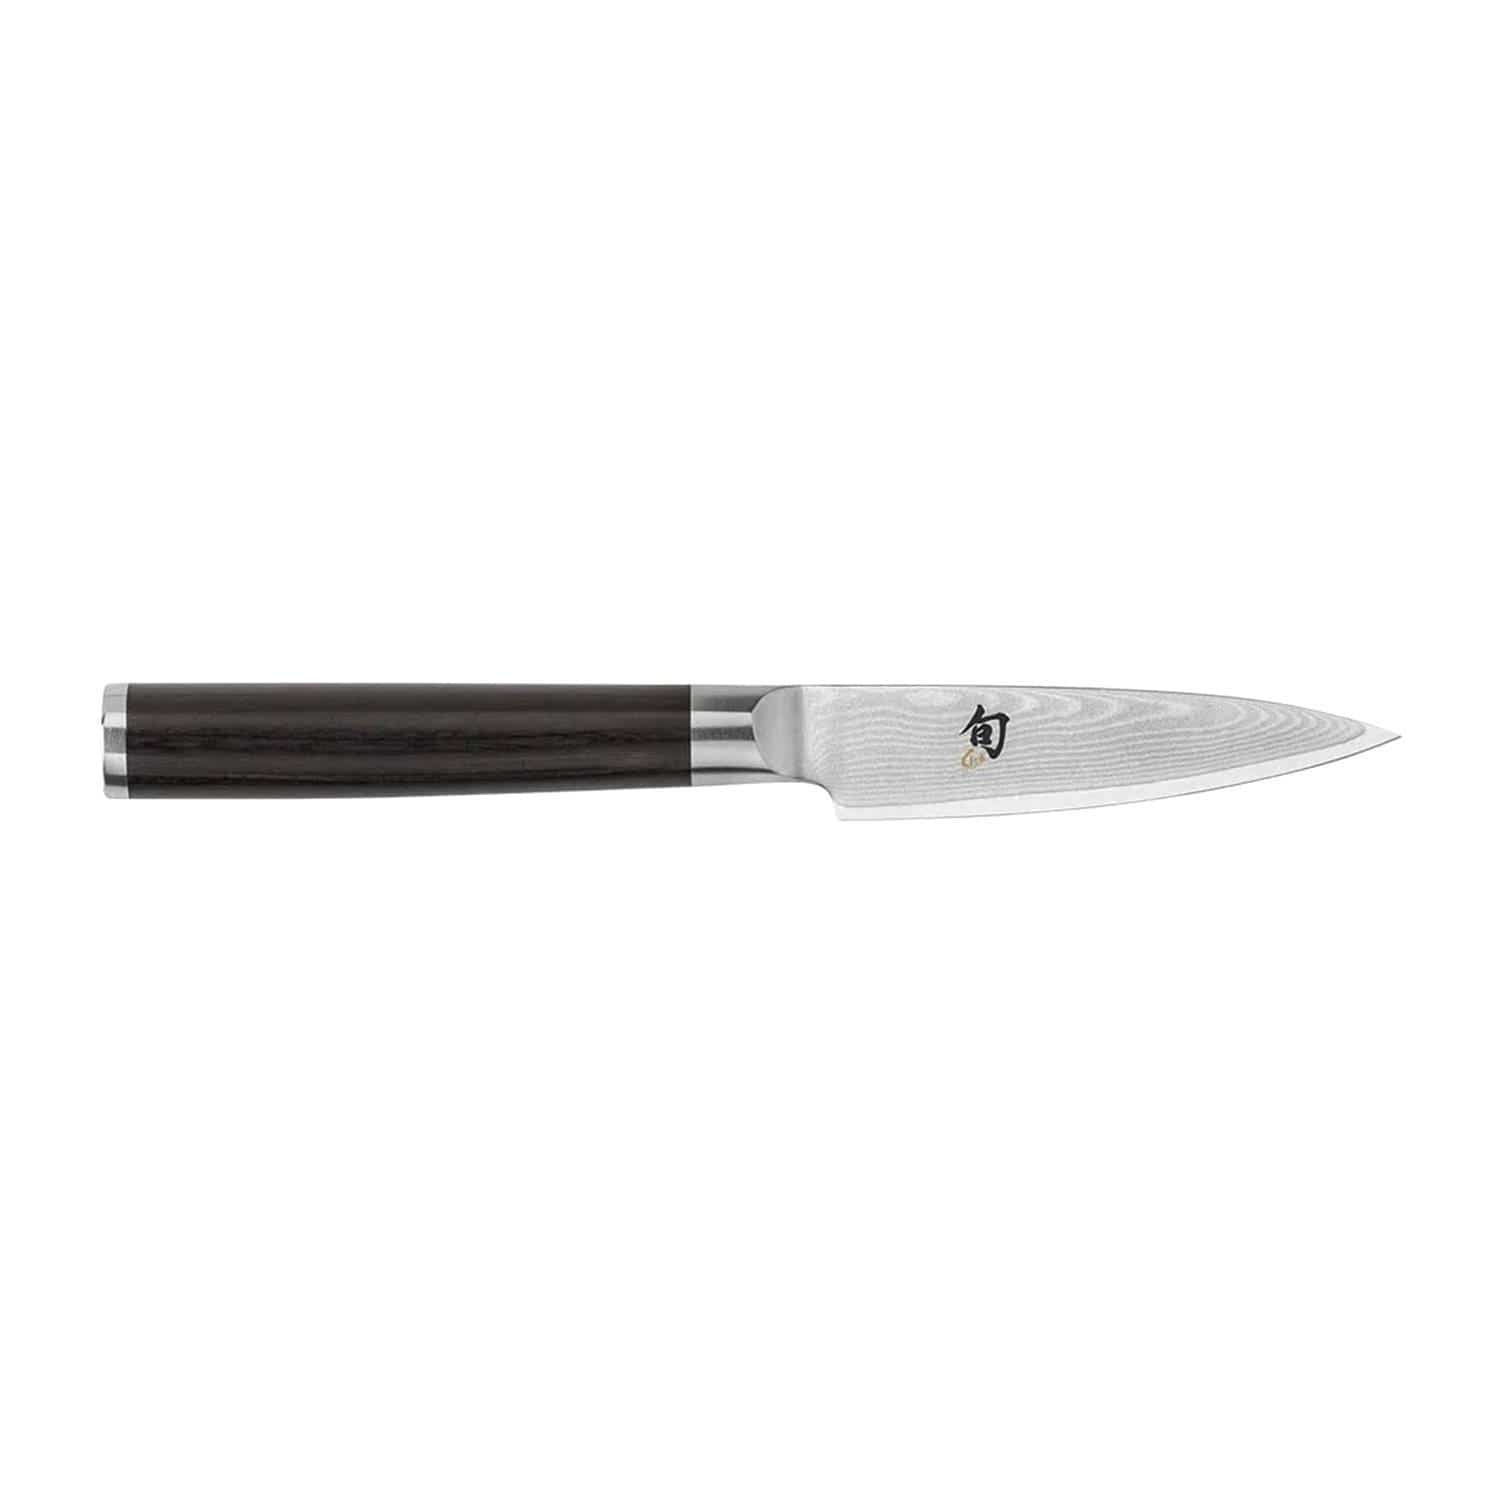 Kai Shun Paring Knife - Black, 8.5 cm - DM-0700 - Jashanmal Home